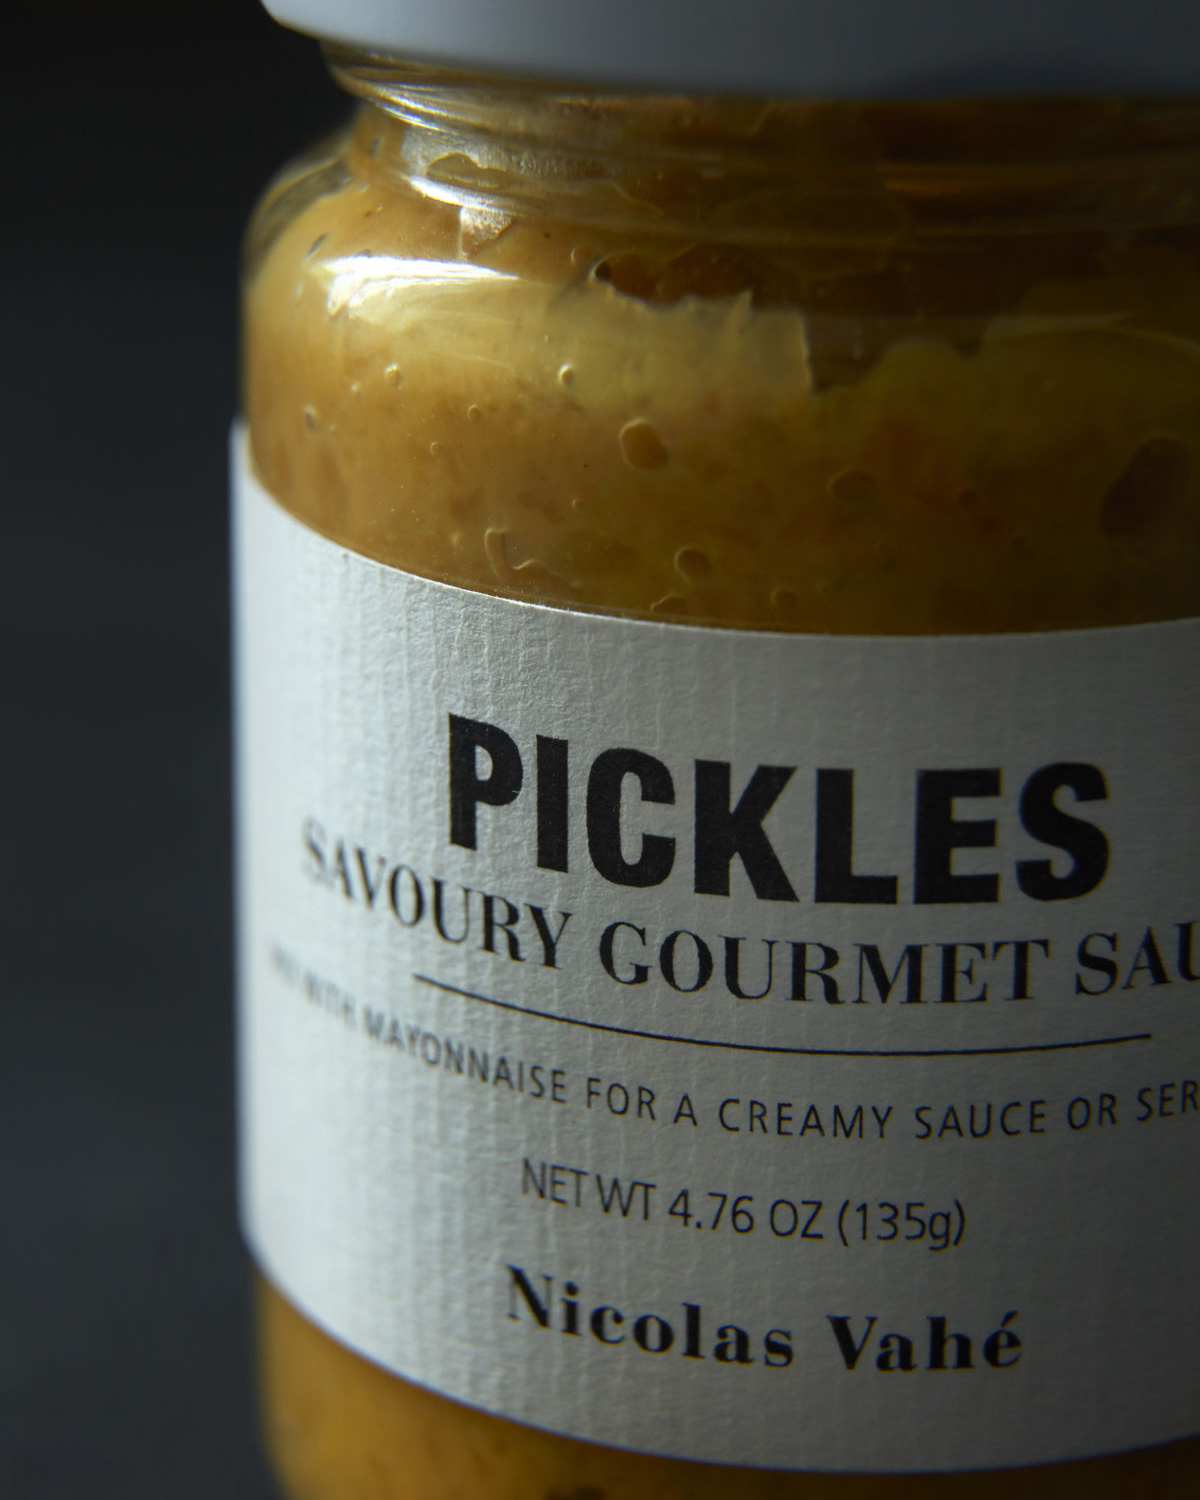 Pickles savoury gourmet sauce, 150 g.